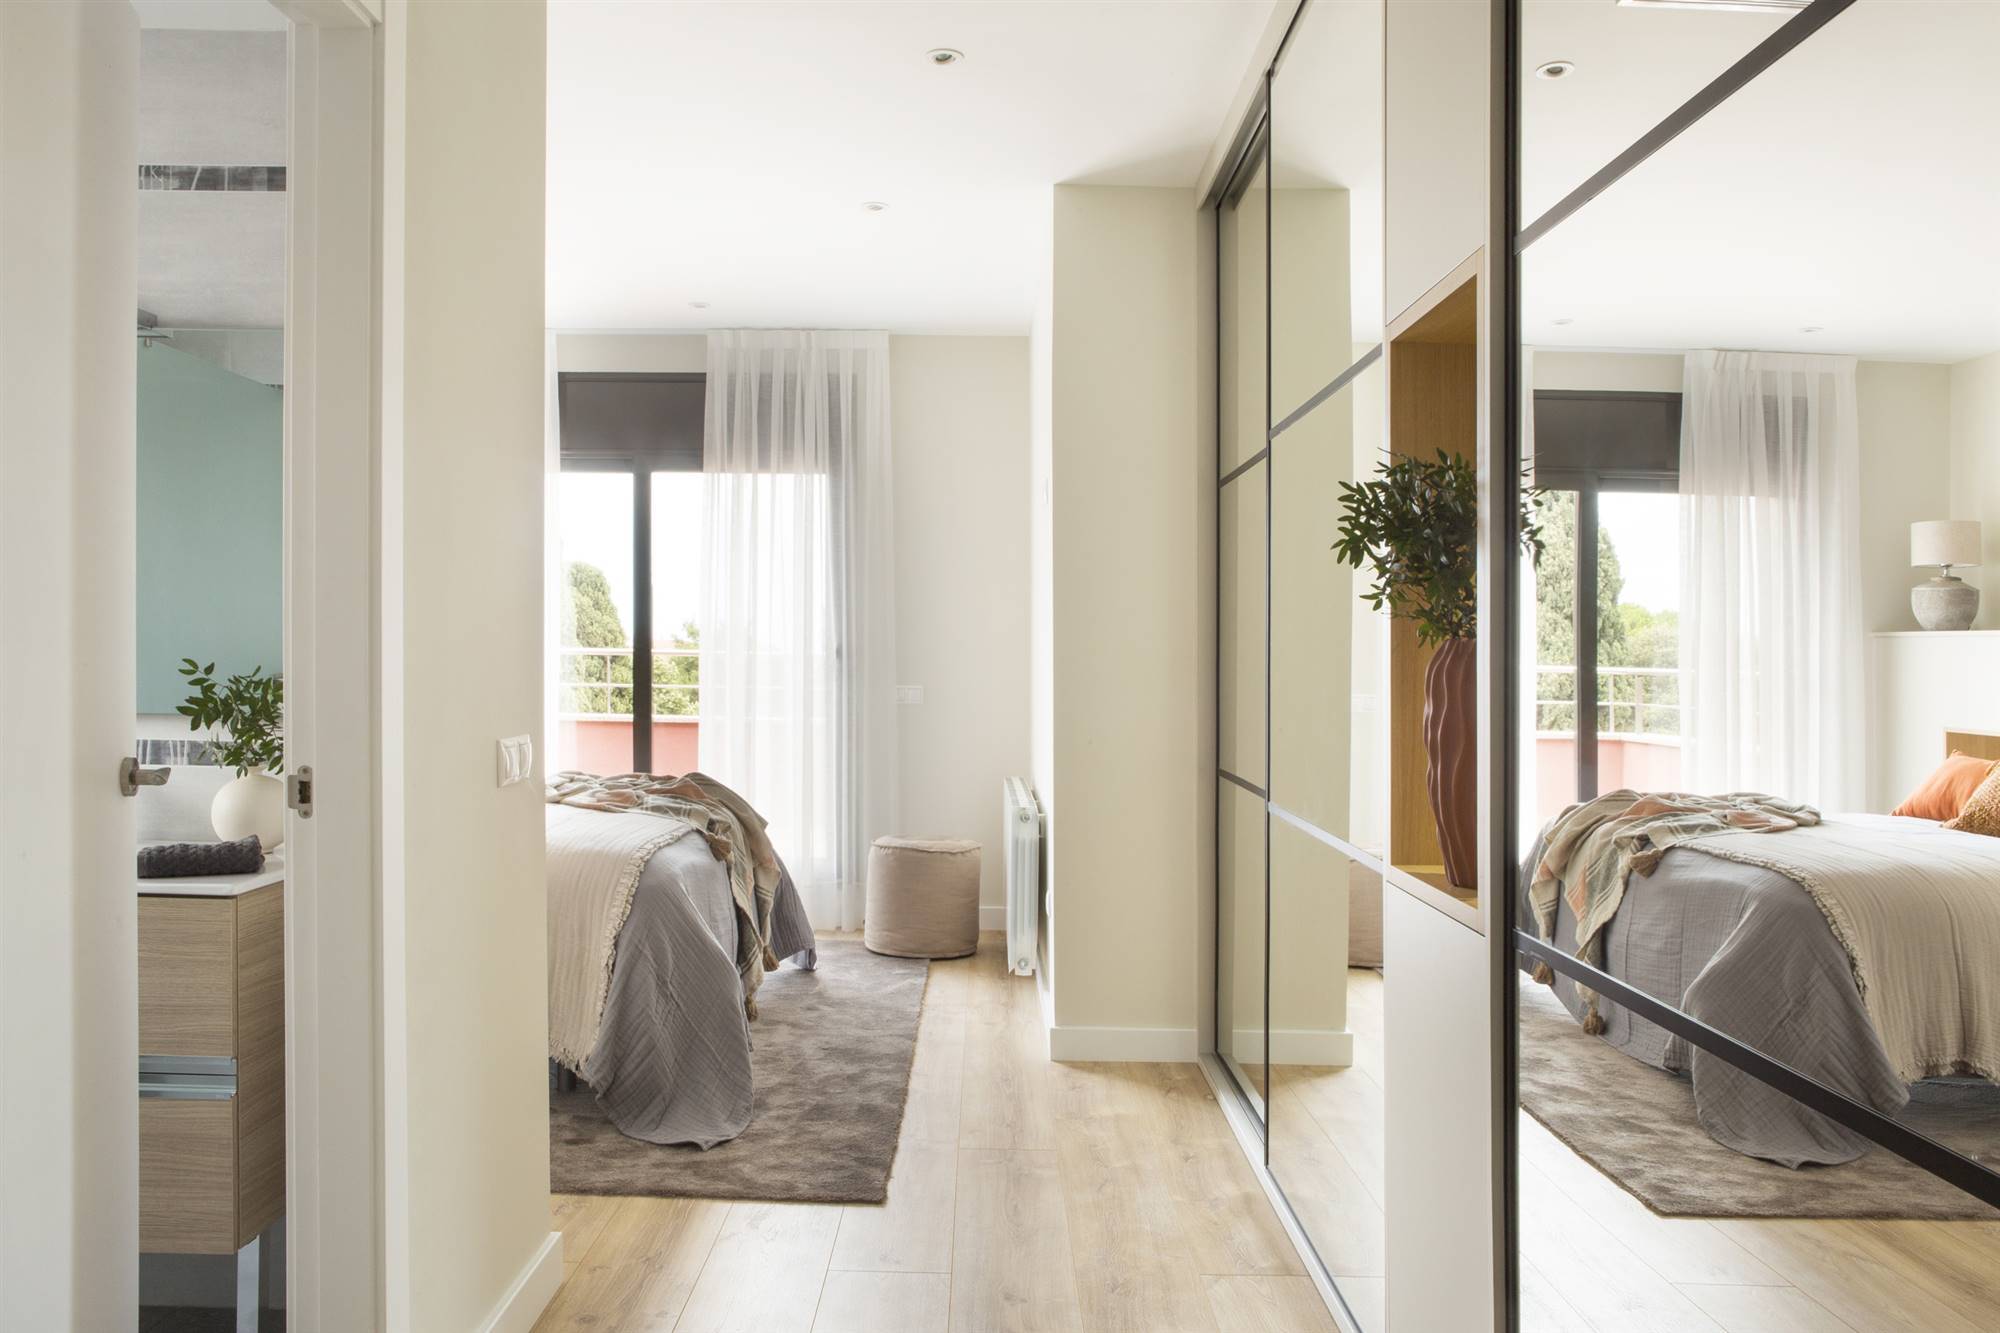 Entrada de la suite, con armarios y el baño de la casa en Mataró, proyecto del estudio de interiorismo Tinda's Project.